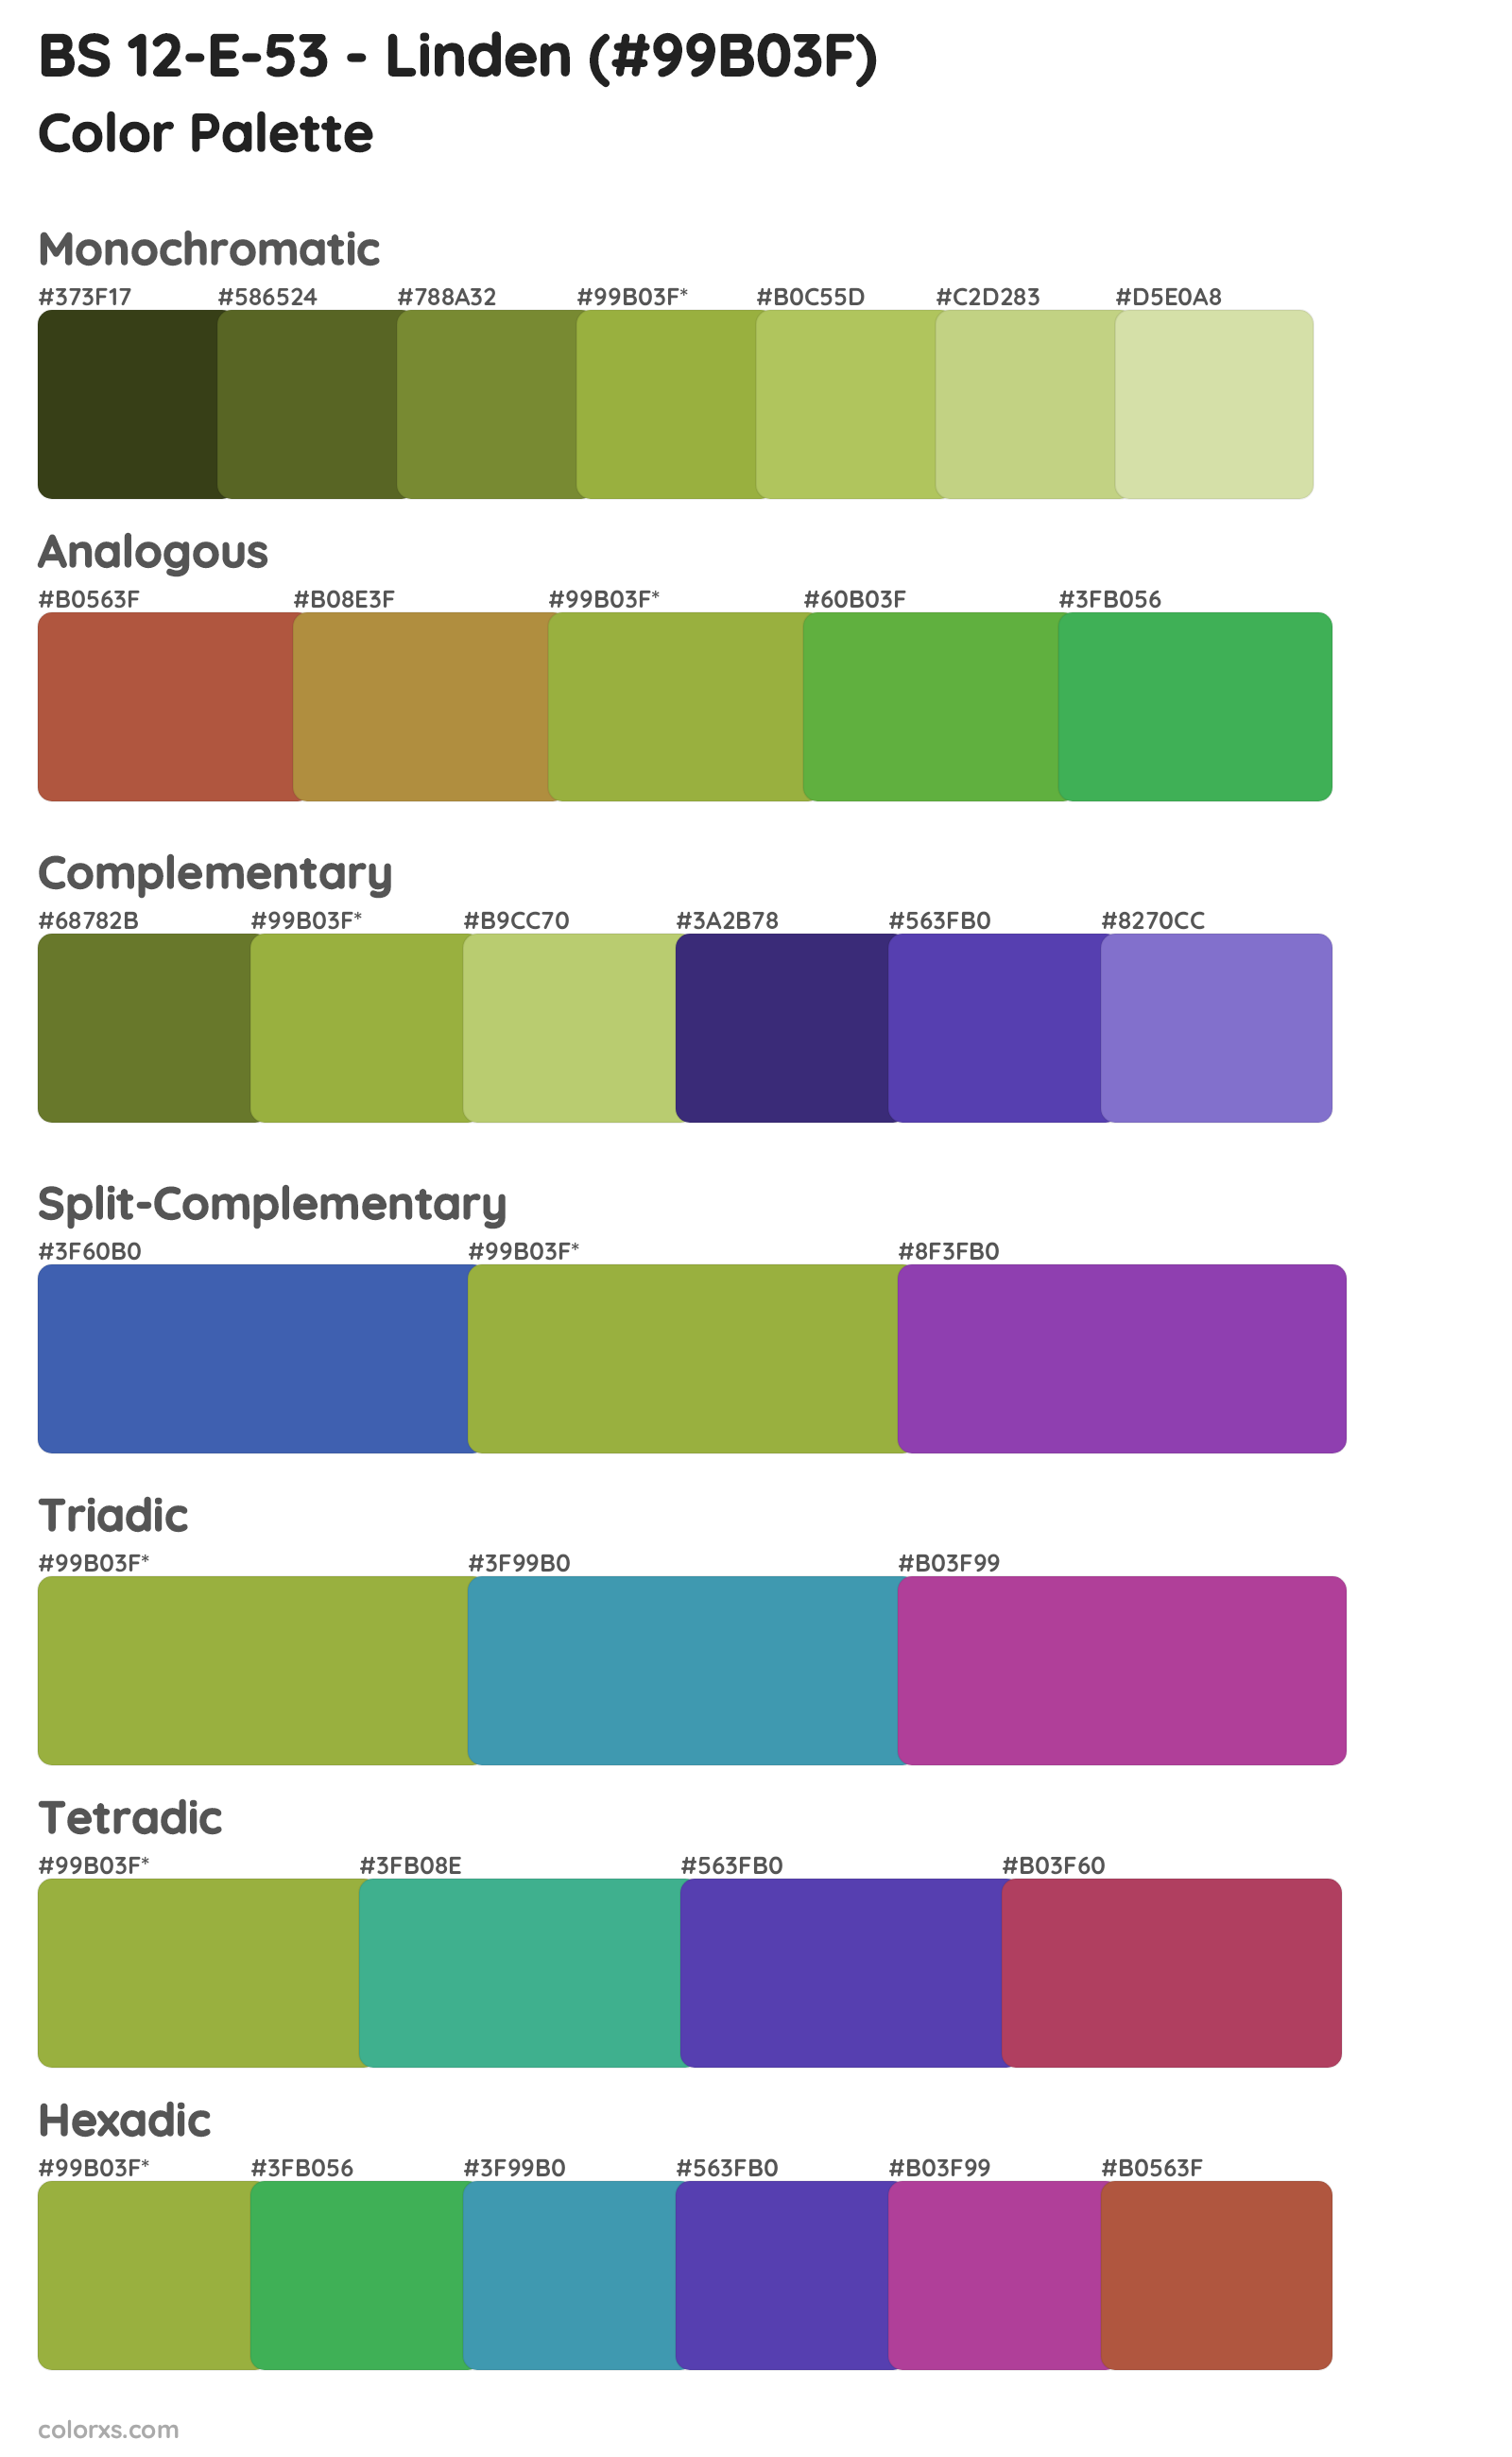 BS 12-E-53 - Linden Color Scheme Palettes